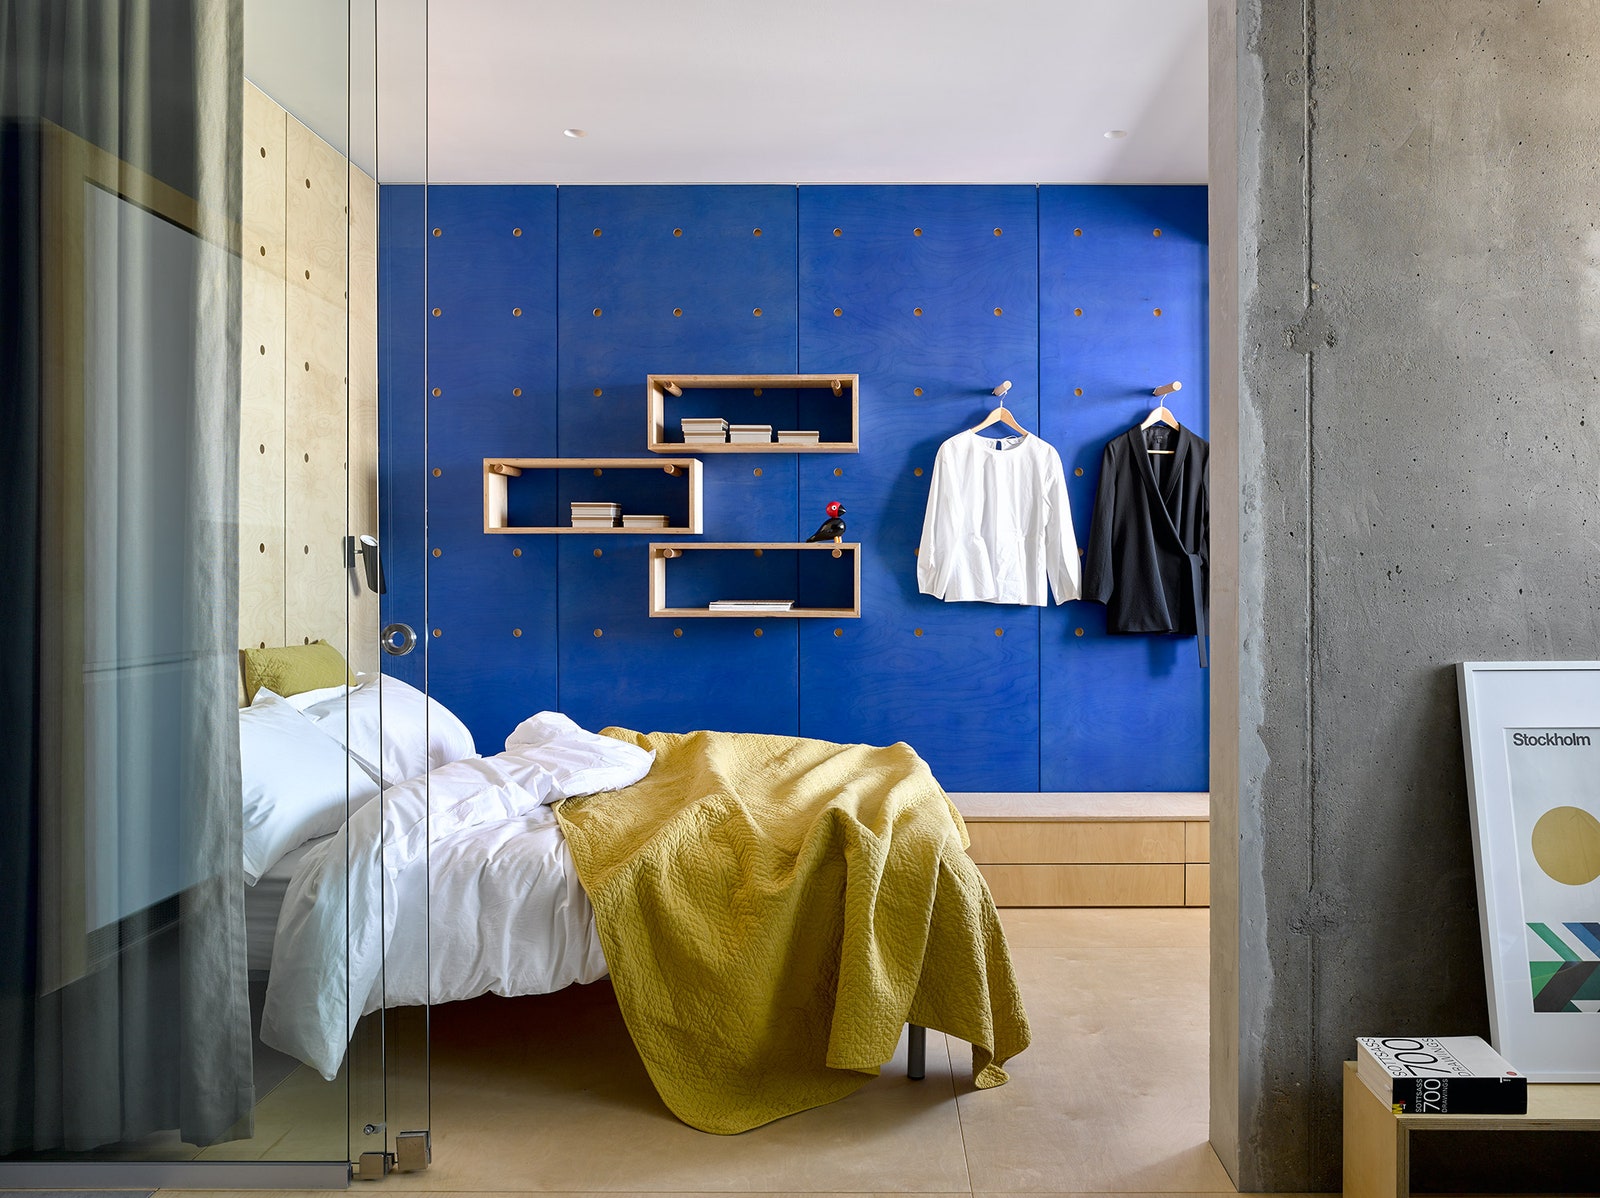 В спальне из фанеры сделаны настенные панели с круглыми просверленными отверстиями. В них вставляются деревянные штыри...